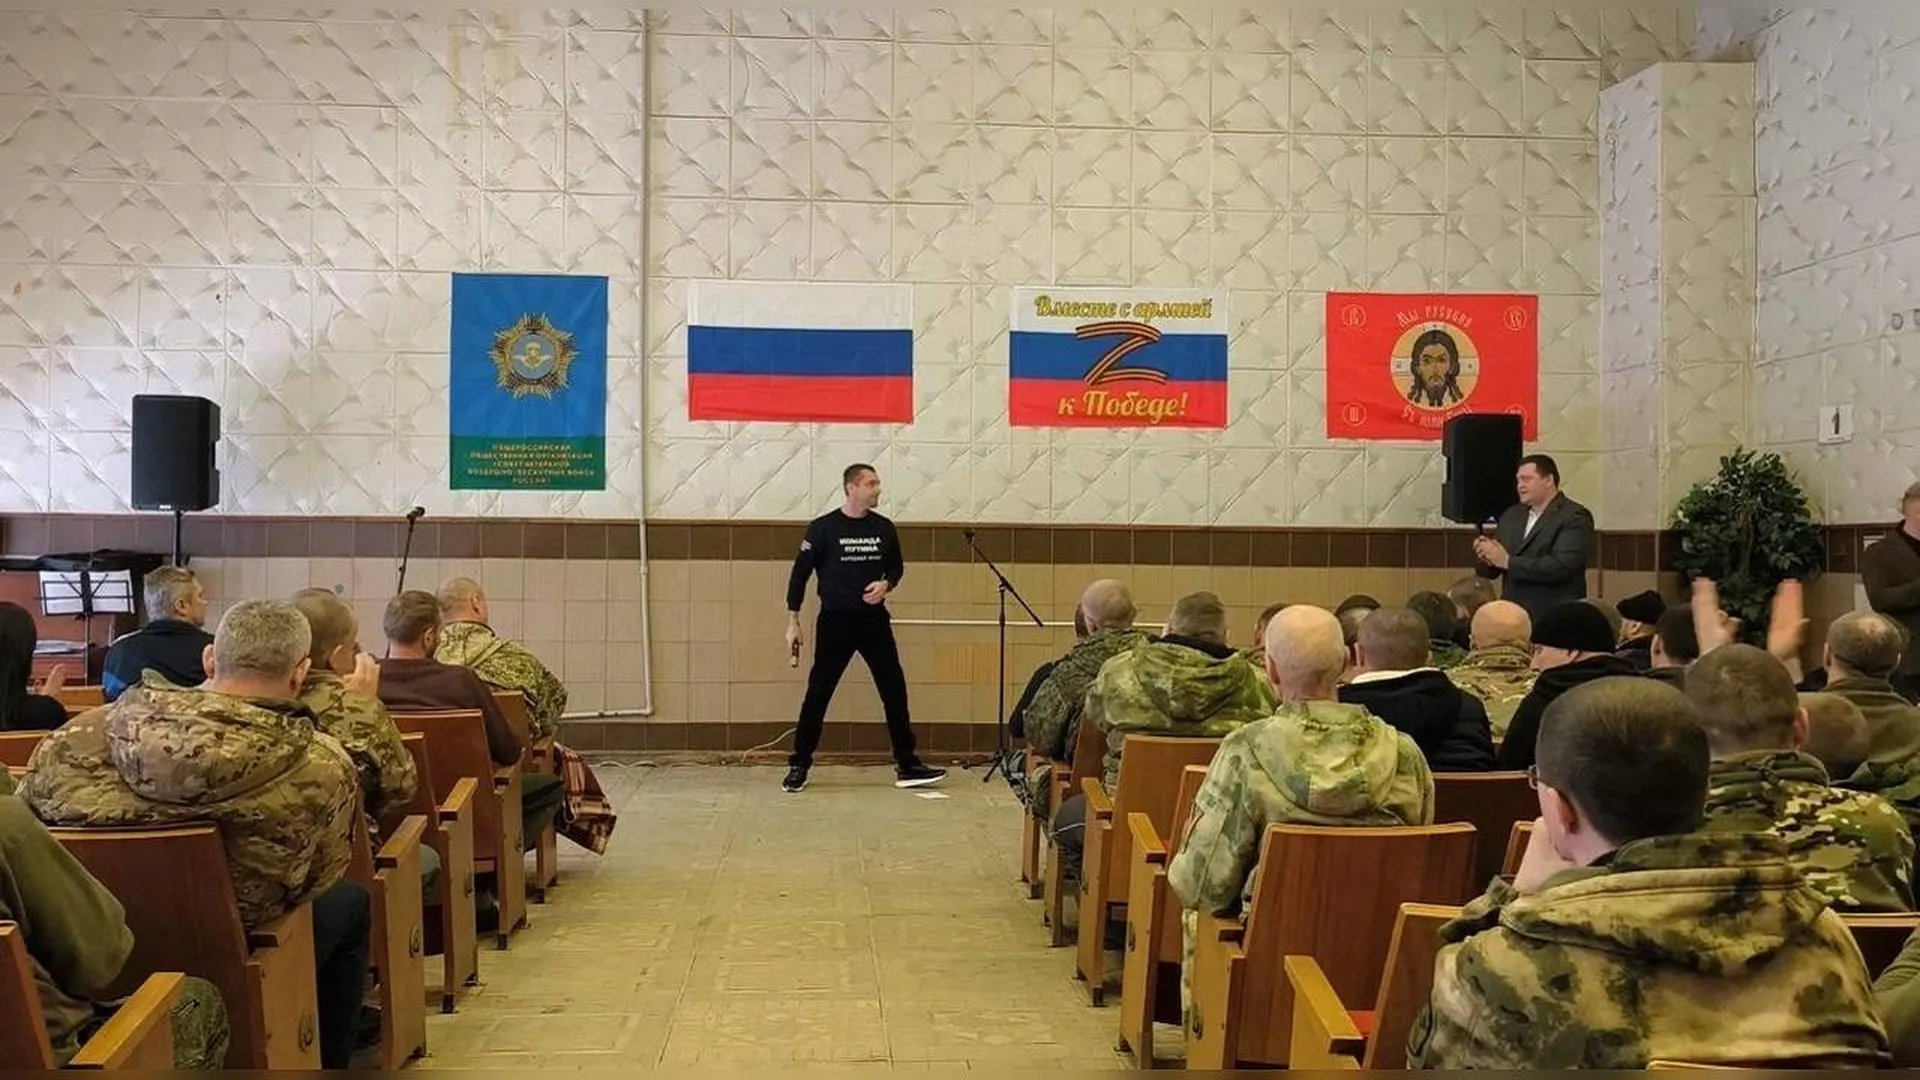 «Ни одного случайного человека»: артисты выступили перед сотней штурмовиков в Луганске